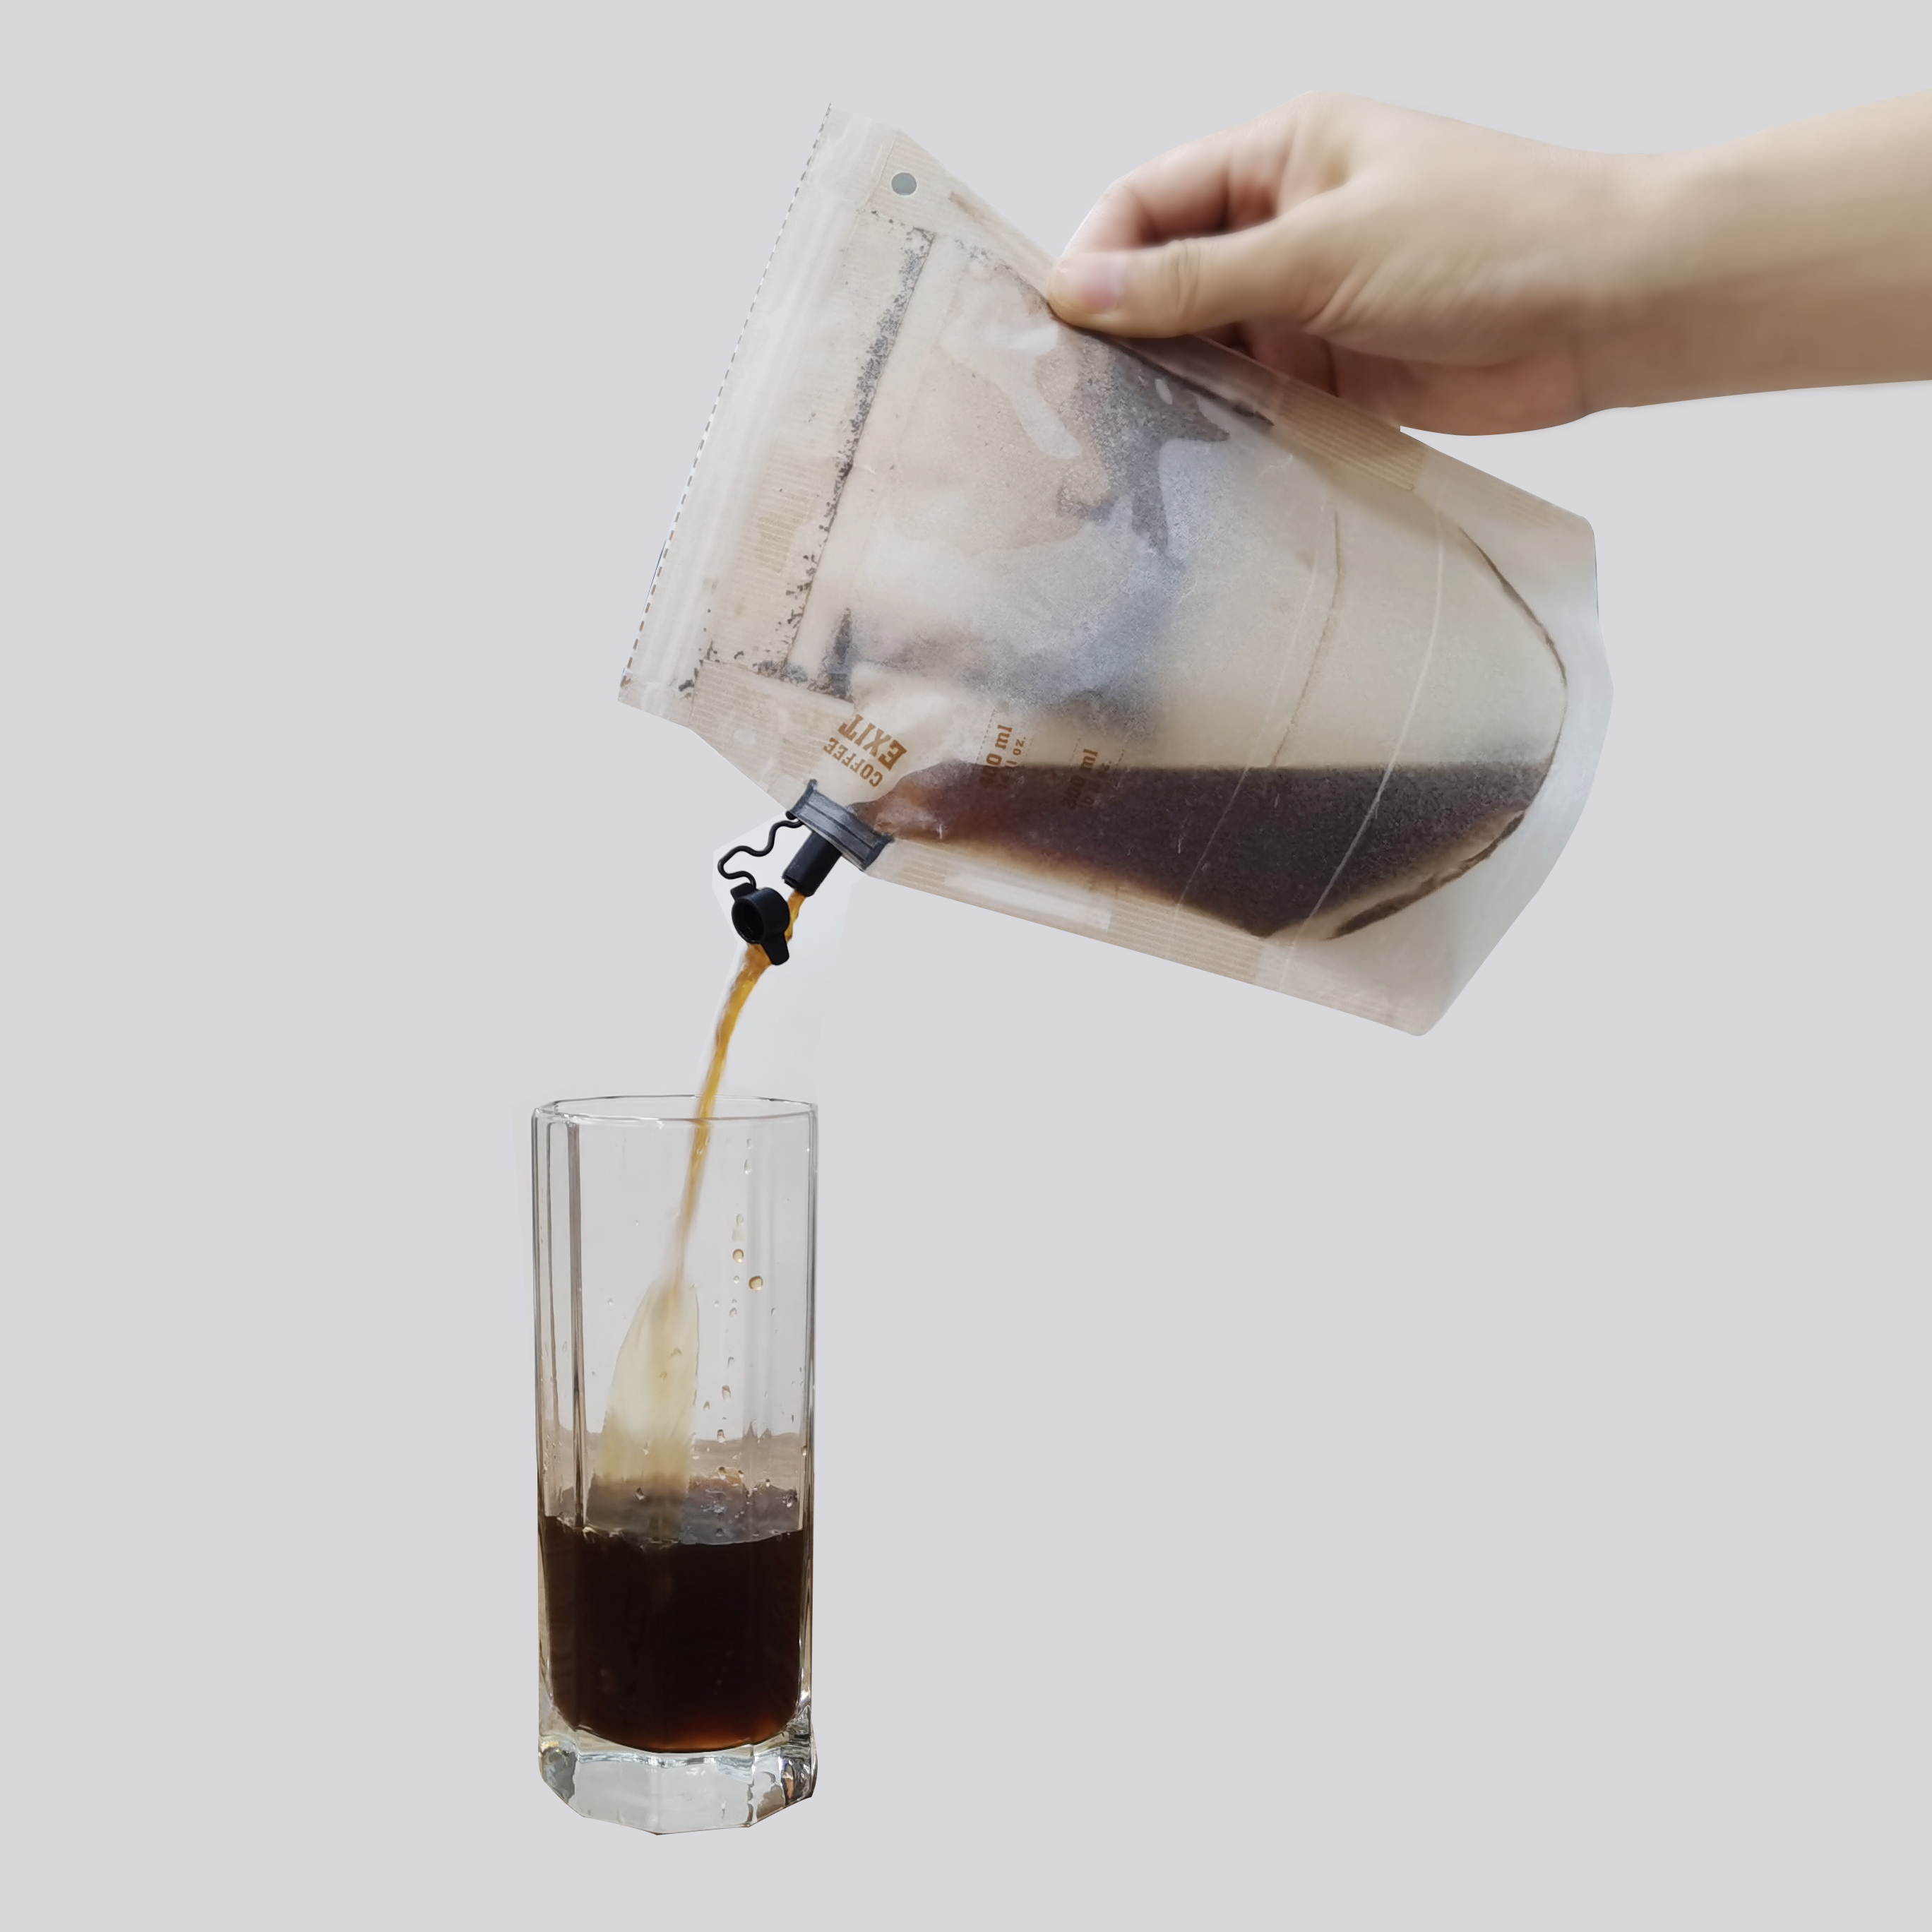 Tragbarer, abnehmbarer Filterbeutel für Kaffee-Tee-Brüher für Bergsteigerausflüge